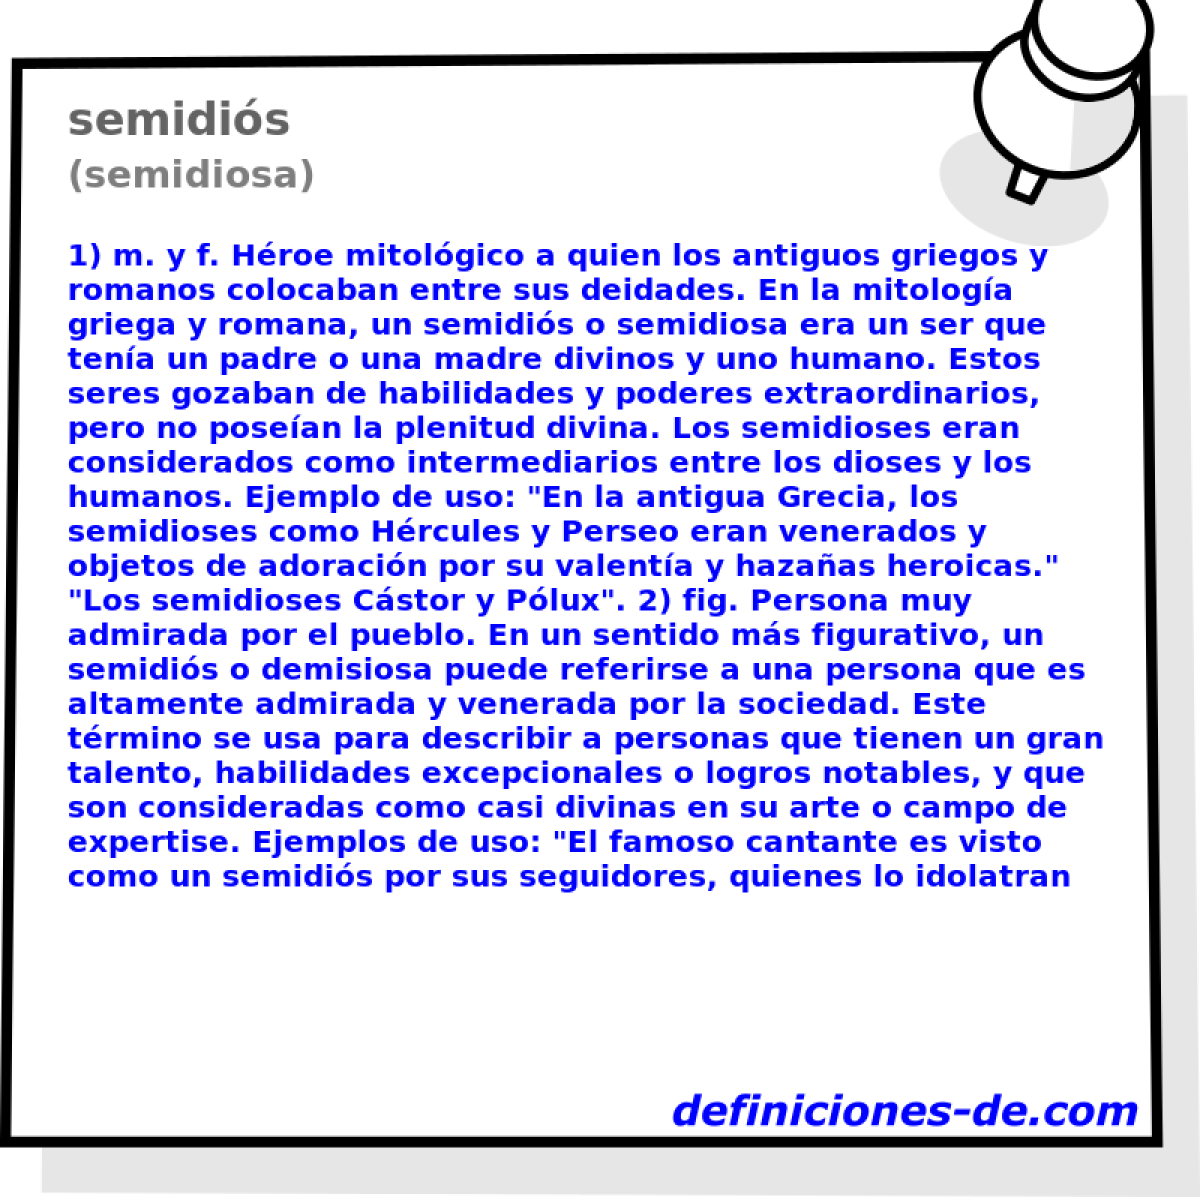 semidis (semidiosa)